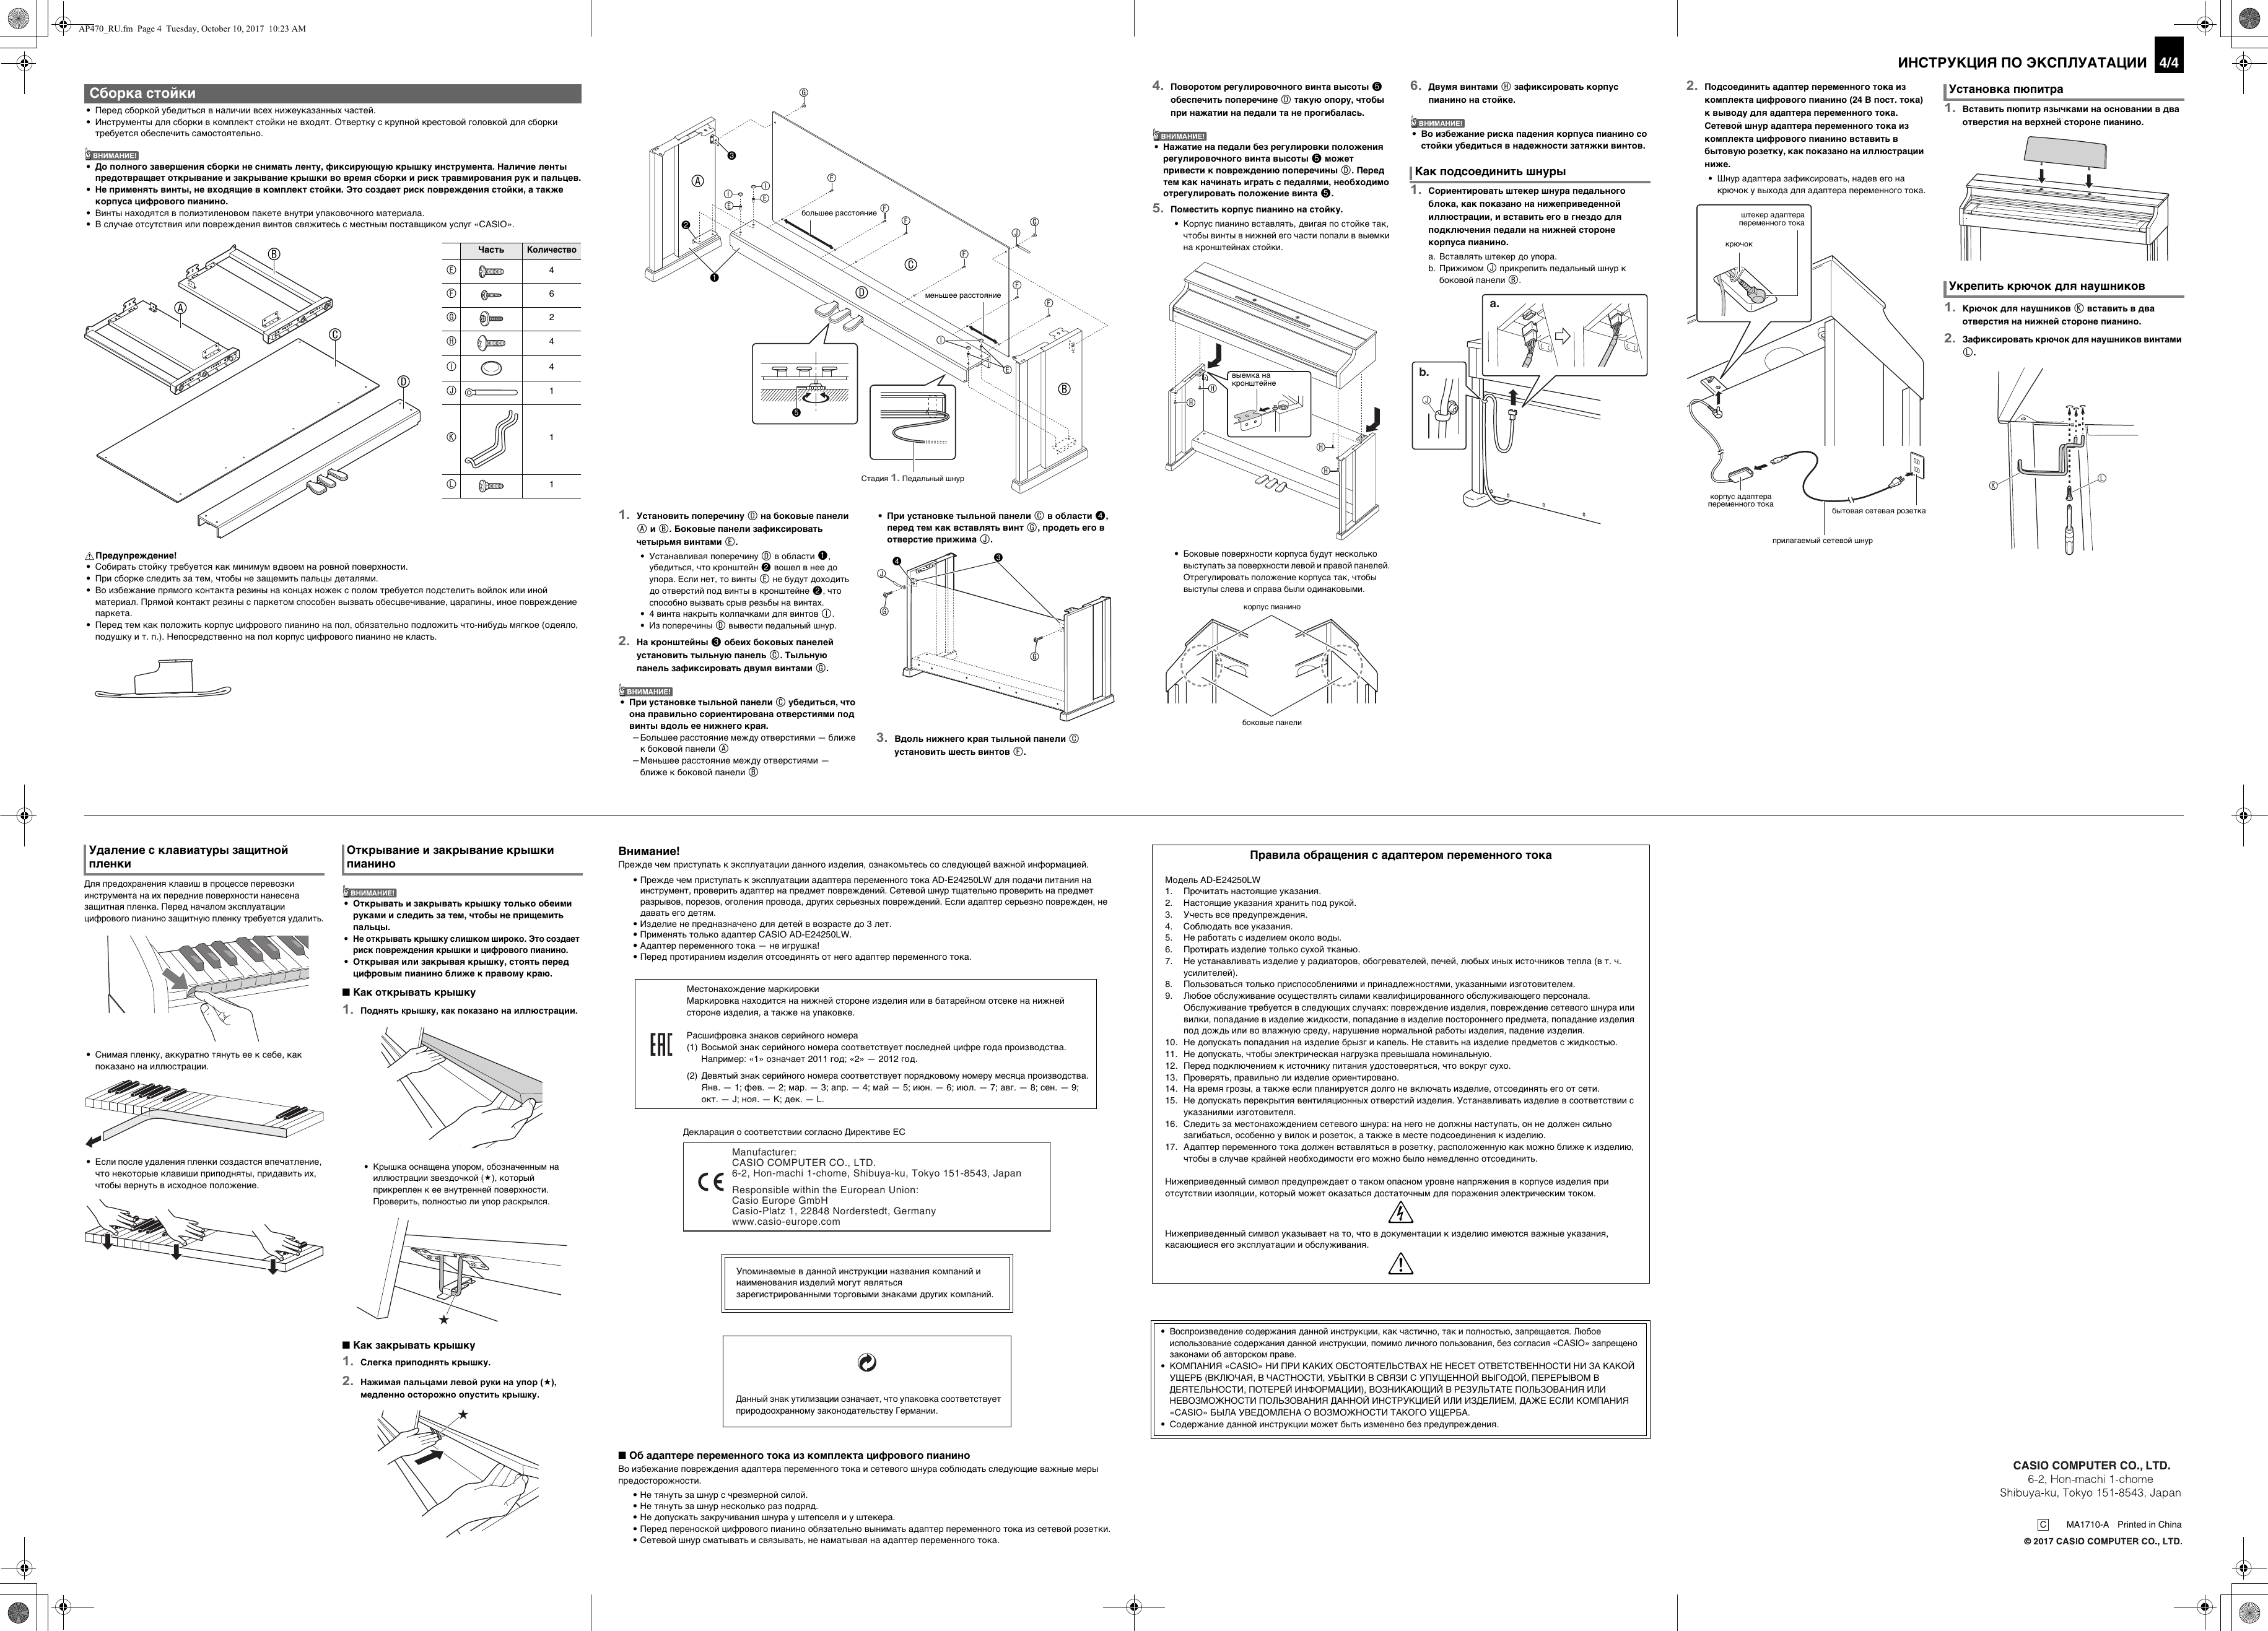 Page 4 of 4 - Casio AP470_RU Web_AP470-RU-1A_2A Web AP470-RU-1A 2A RU